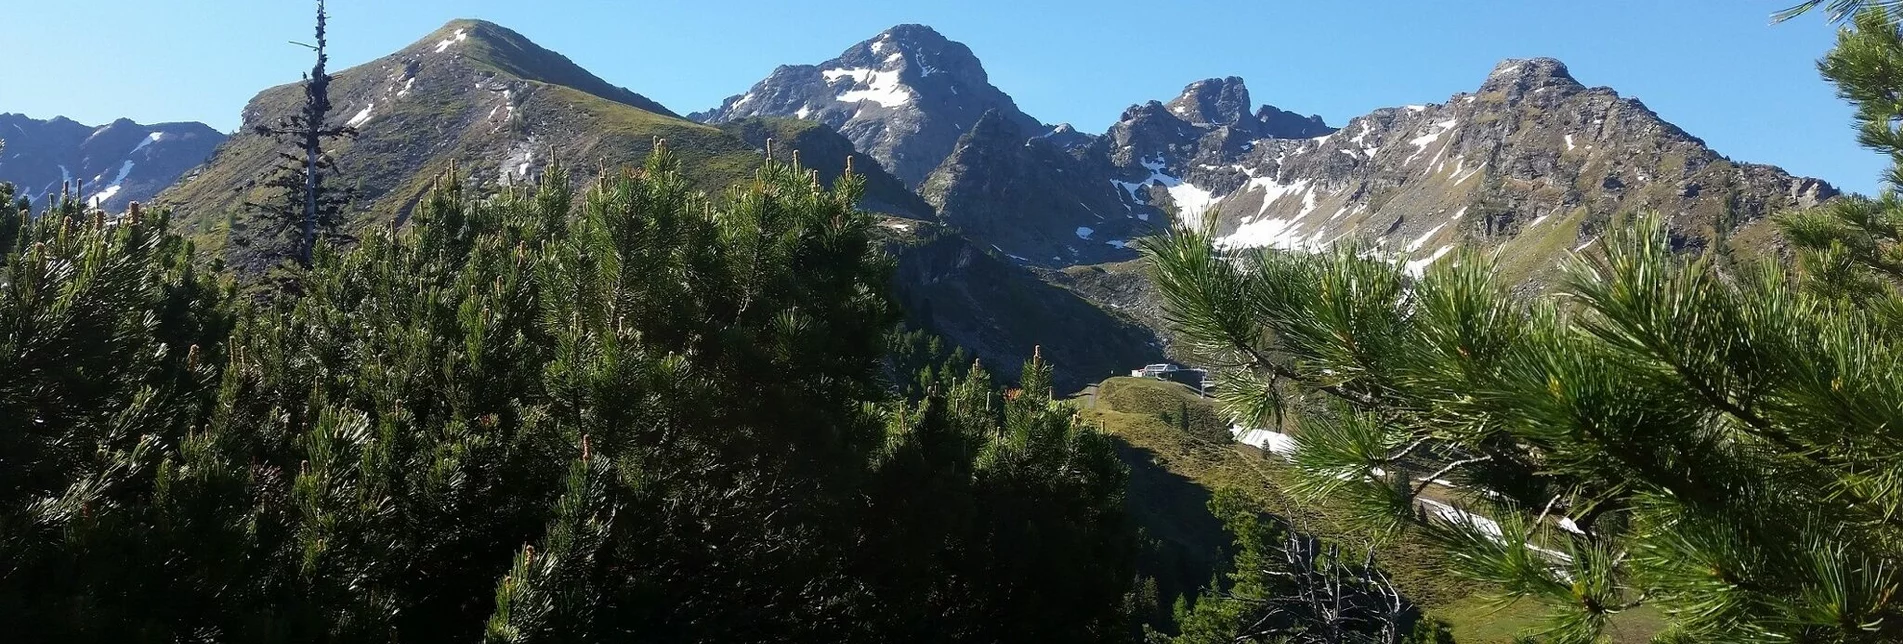 Bergtour Hauser Kaibling (2.015 m) - Höchstein (2.543 m) - Moaralmsee - Touren-Impression #1 | © TV Haus-Aich-Gössenberg